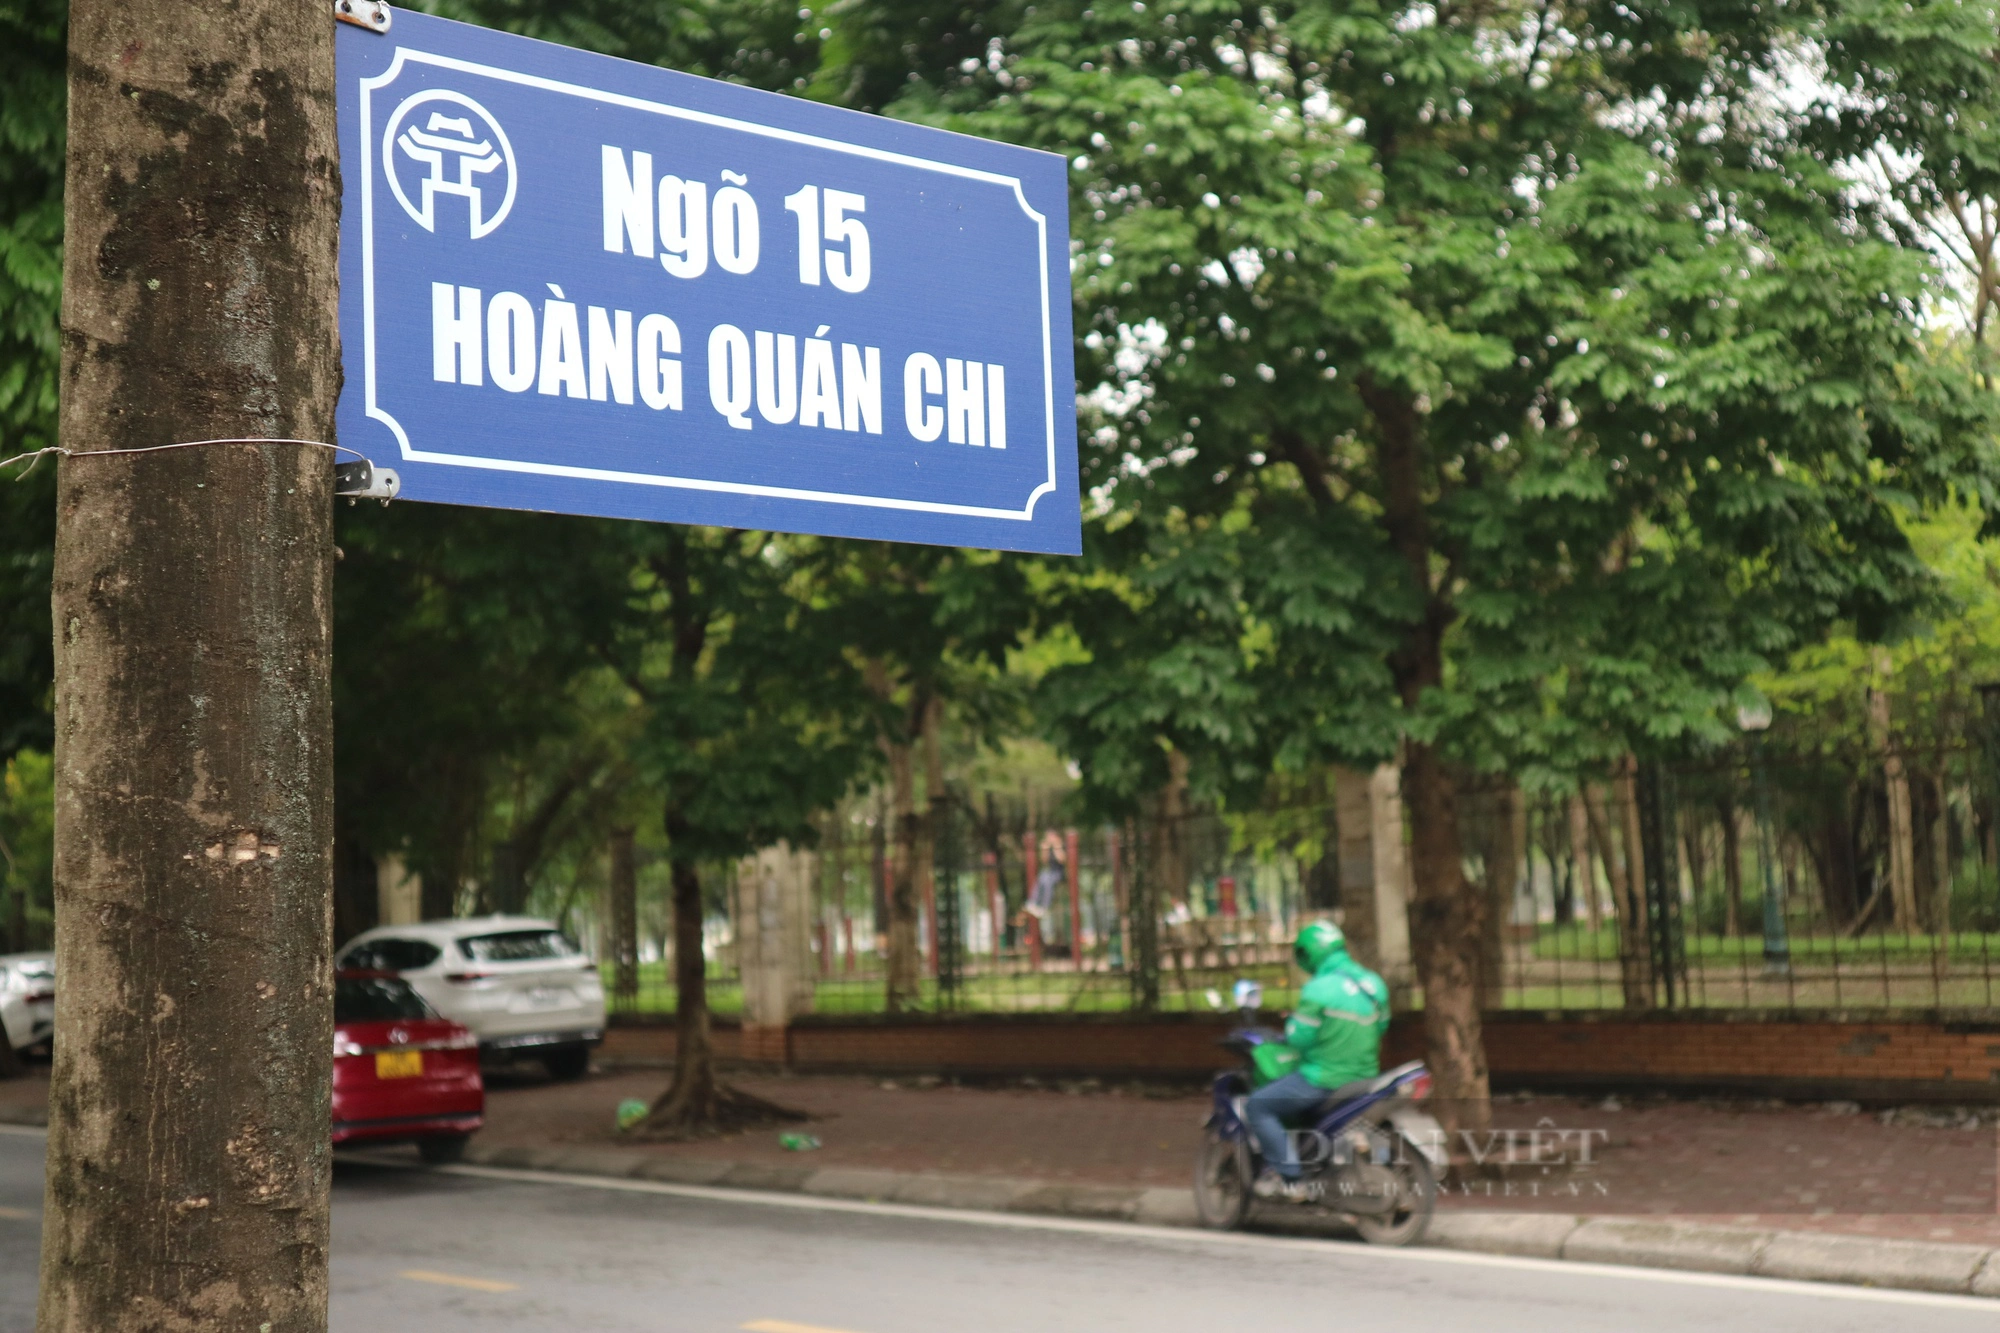 Chuyện lạ "có một không hai" ở Hà Nội: Biển báo tên đường được treo trên cây- Ảnh 4.